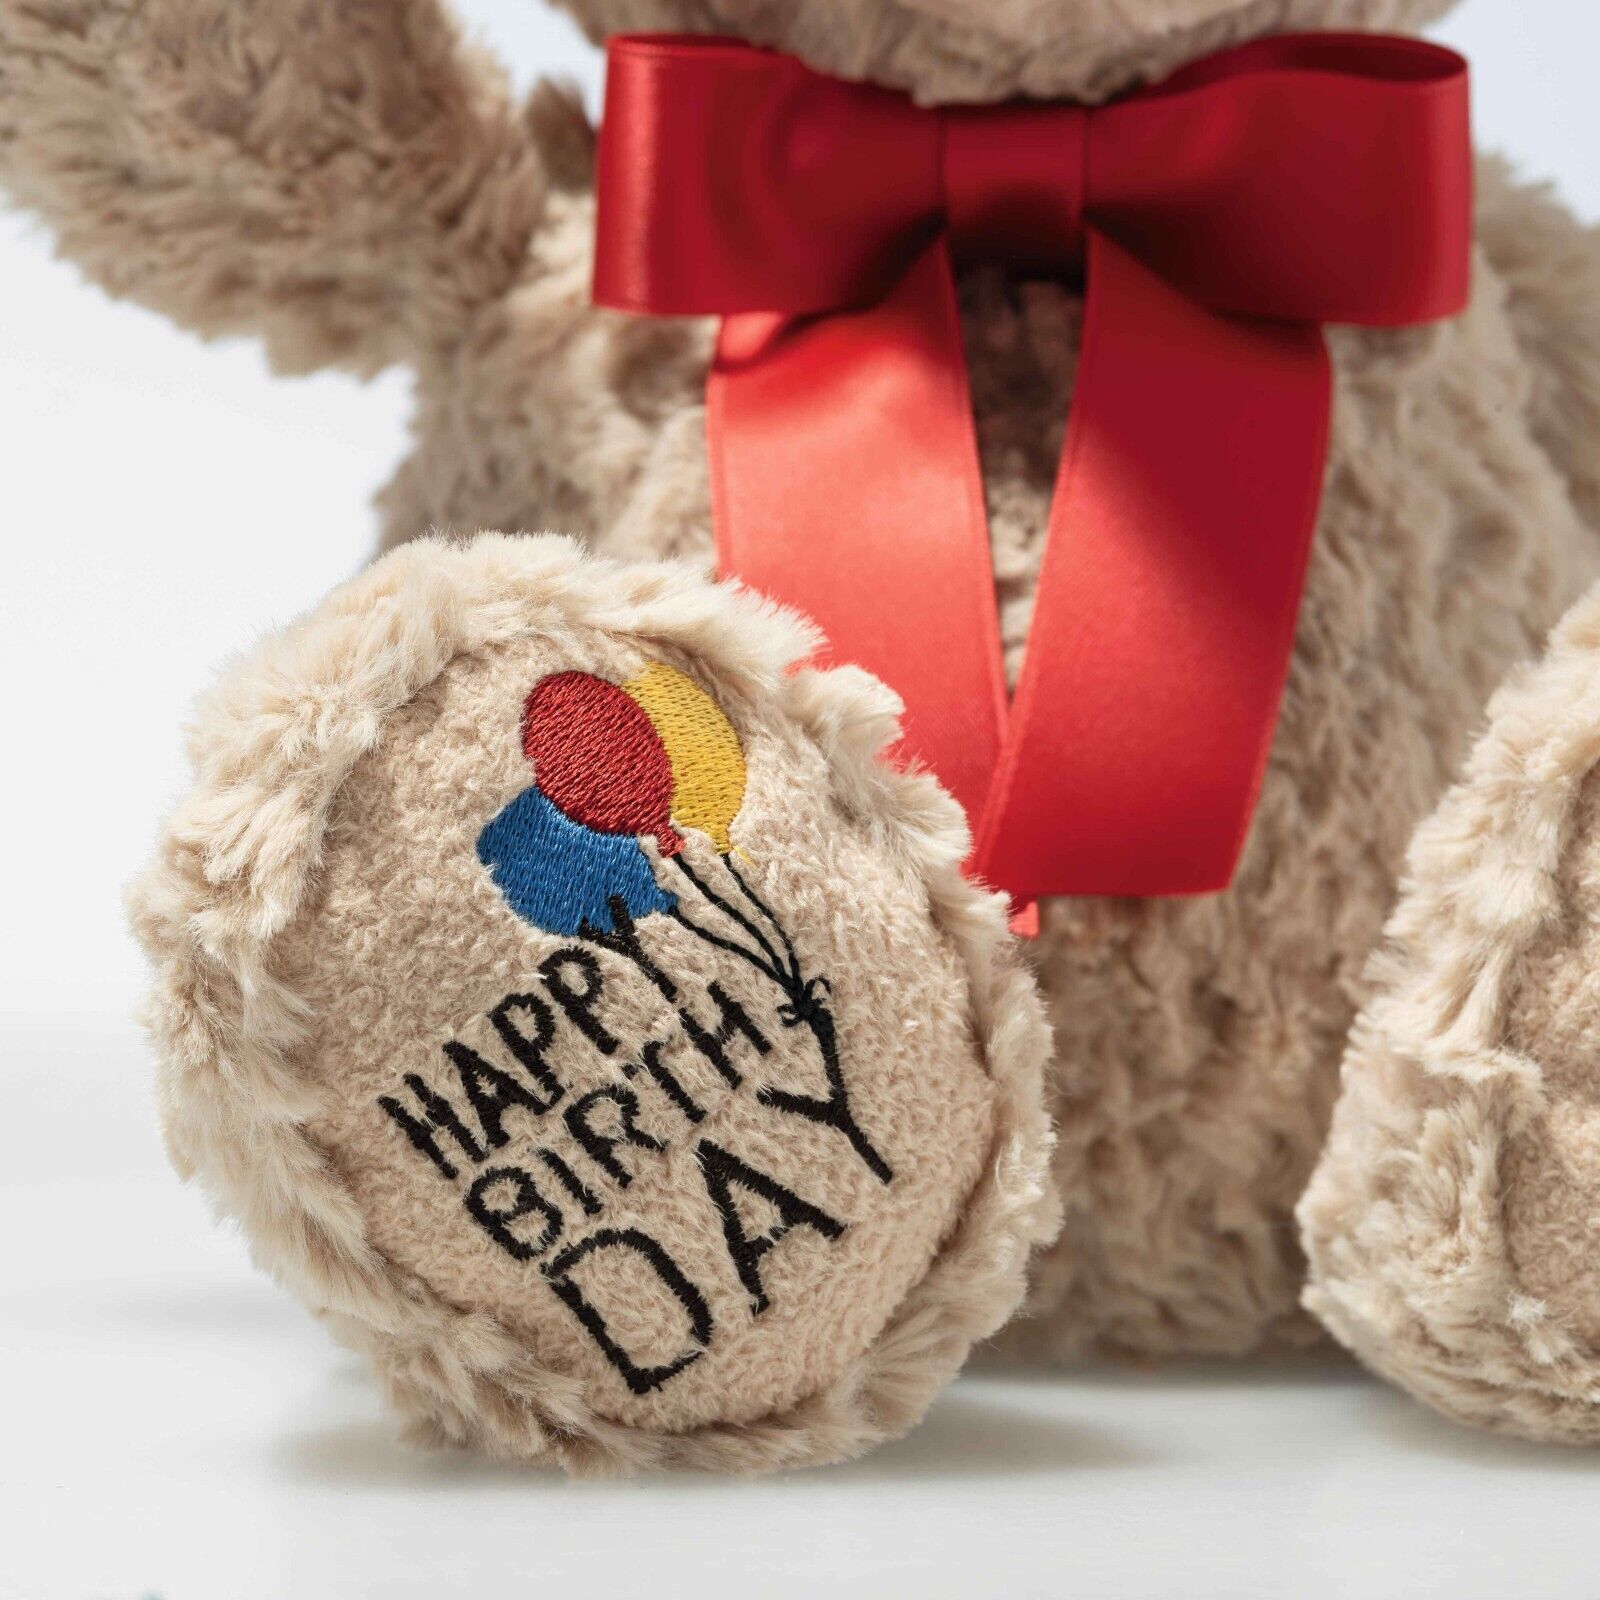 STEIFF Teddybär Jimmy 35 cm beige 'Happy Birthday' 114069 - für liebste Menschen - NEU!